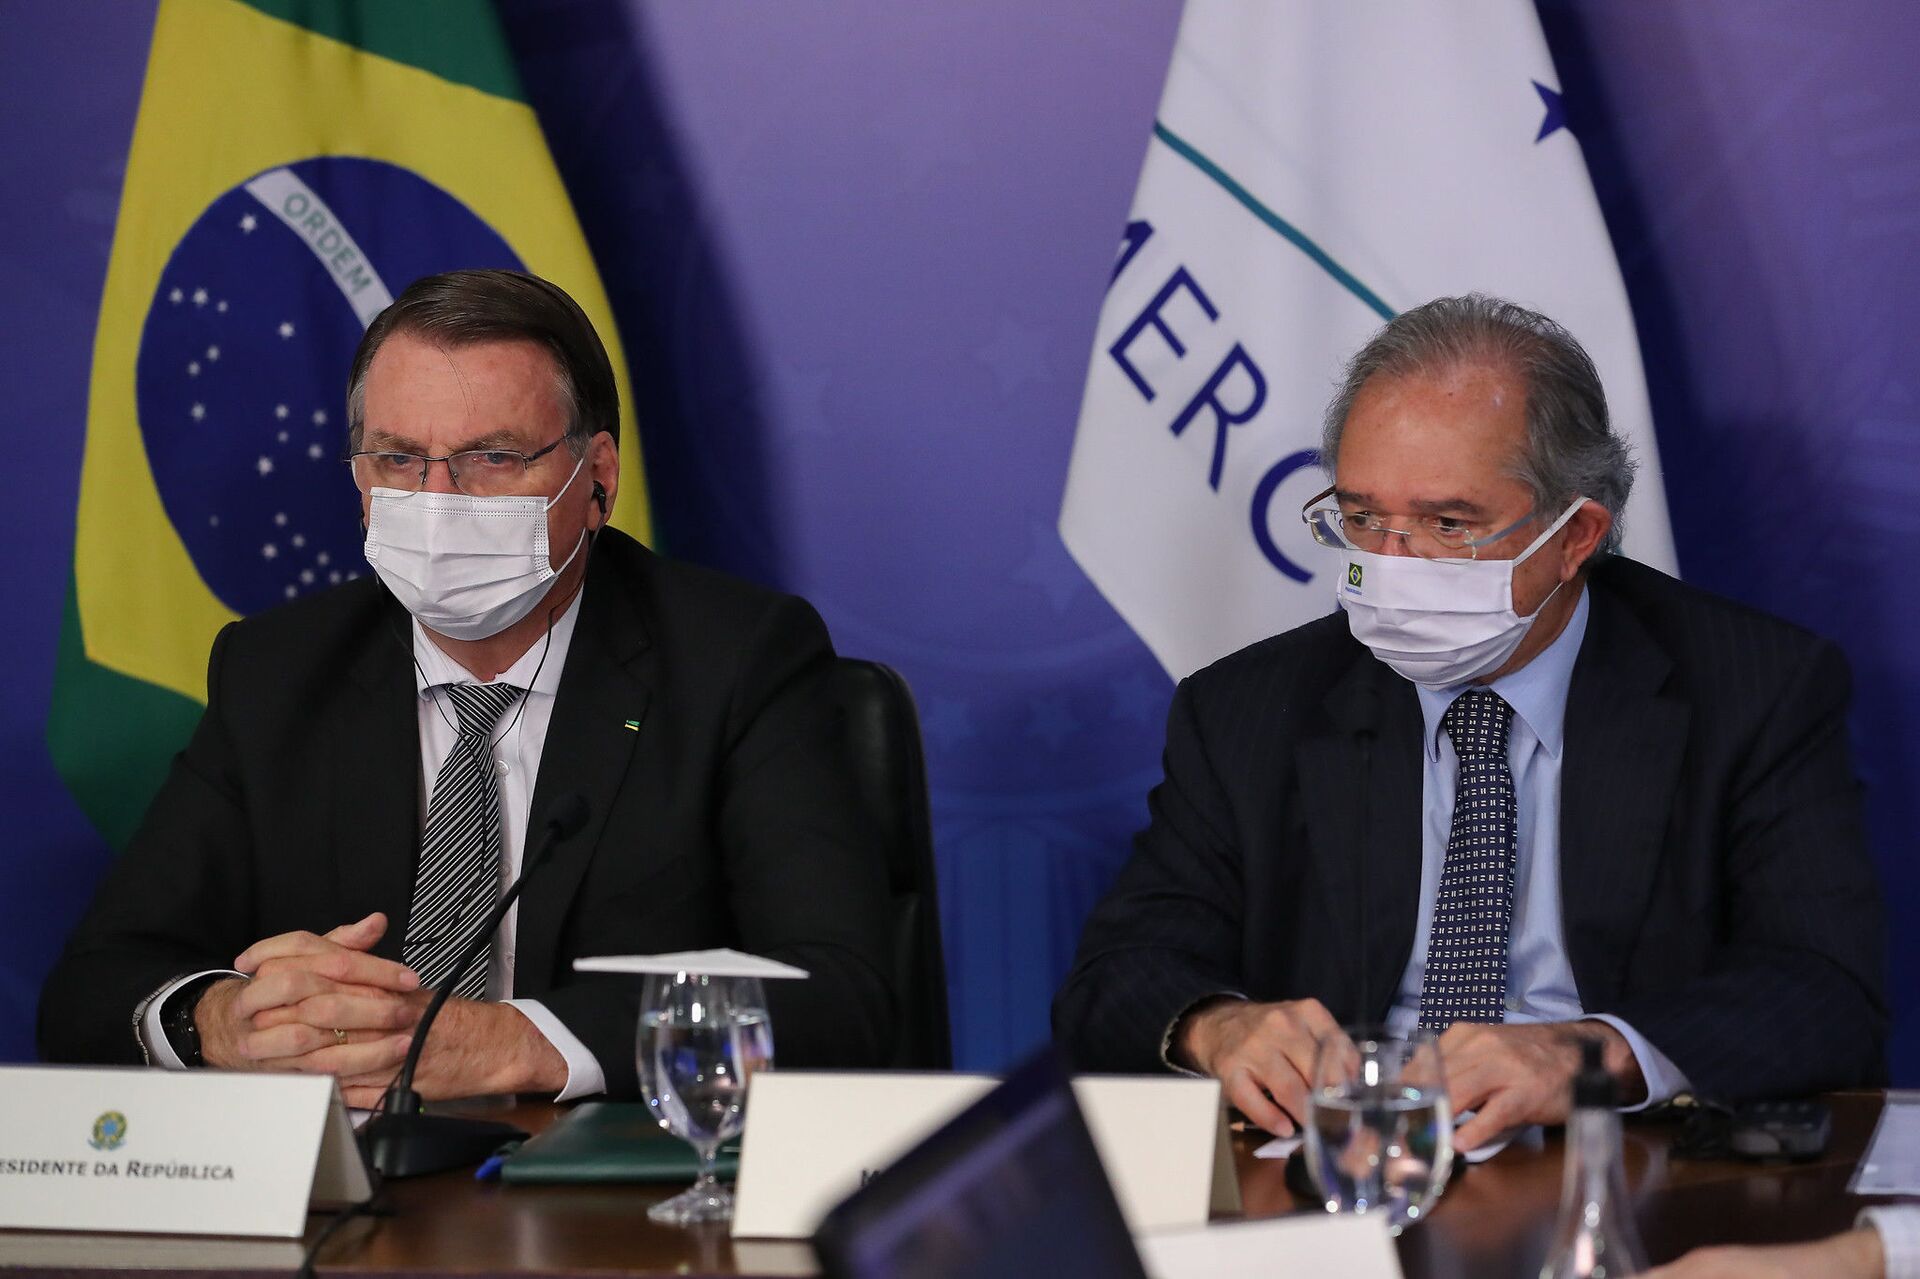 O presidente Jair Bolsonaro participa da cúpula do Mercosul ao lado do ministro da Economia, Paulo Guedes - Sputnik Brasil, 1920, 09.11.2021